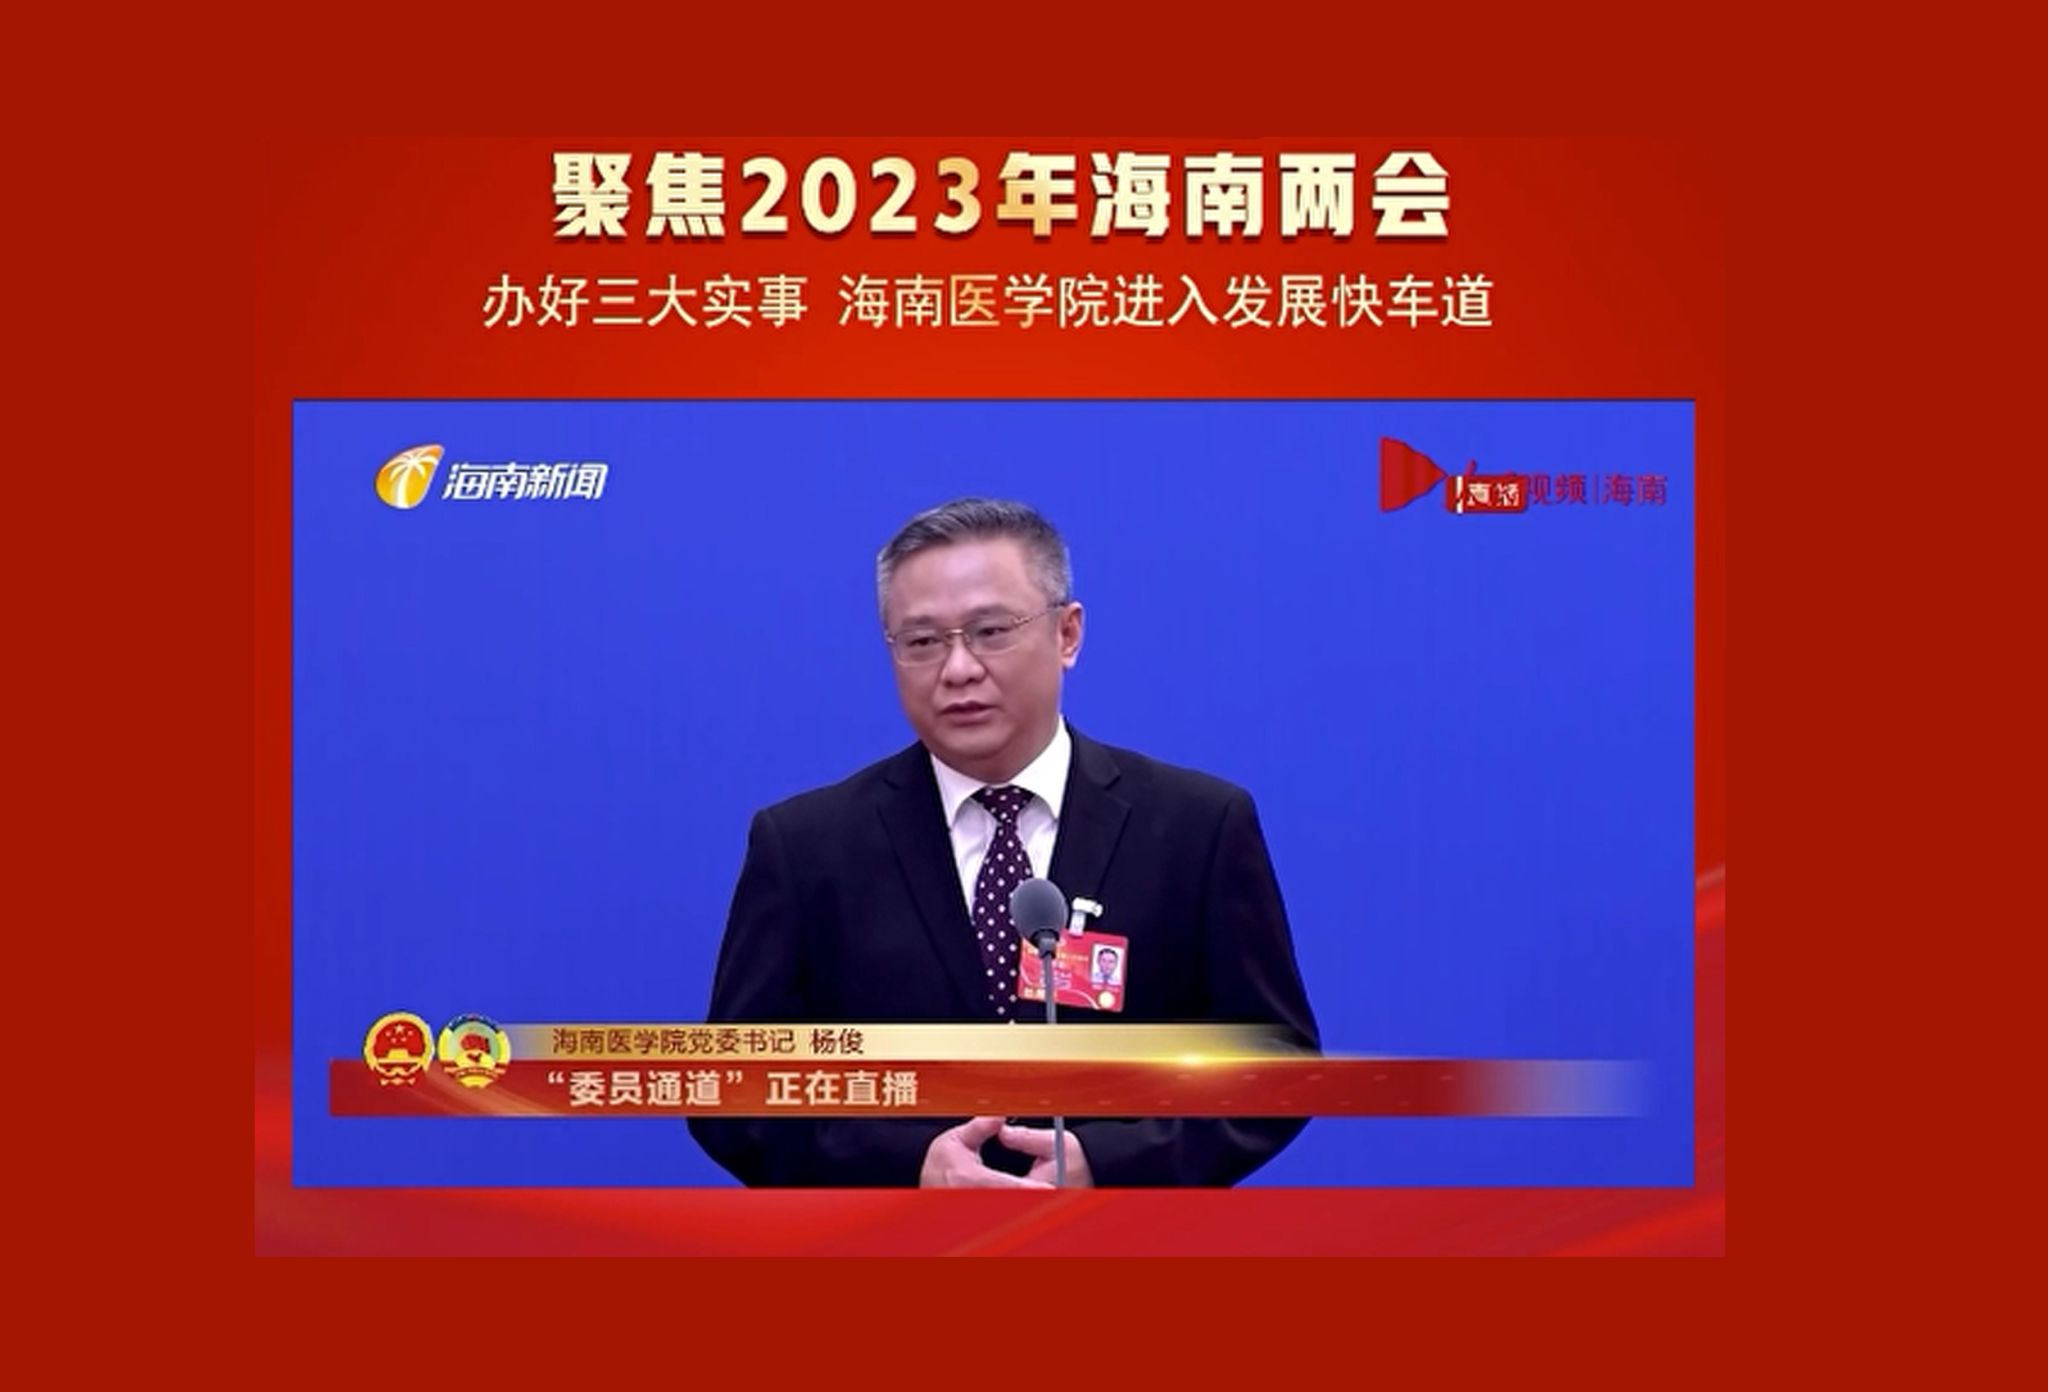 党委书记杨俊在“两会”委员通道谈自贸港医疗和教育工作